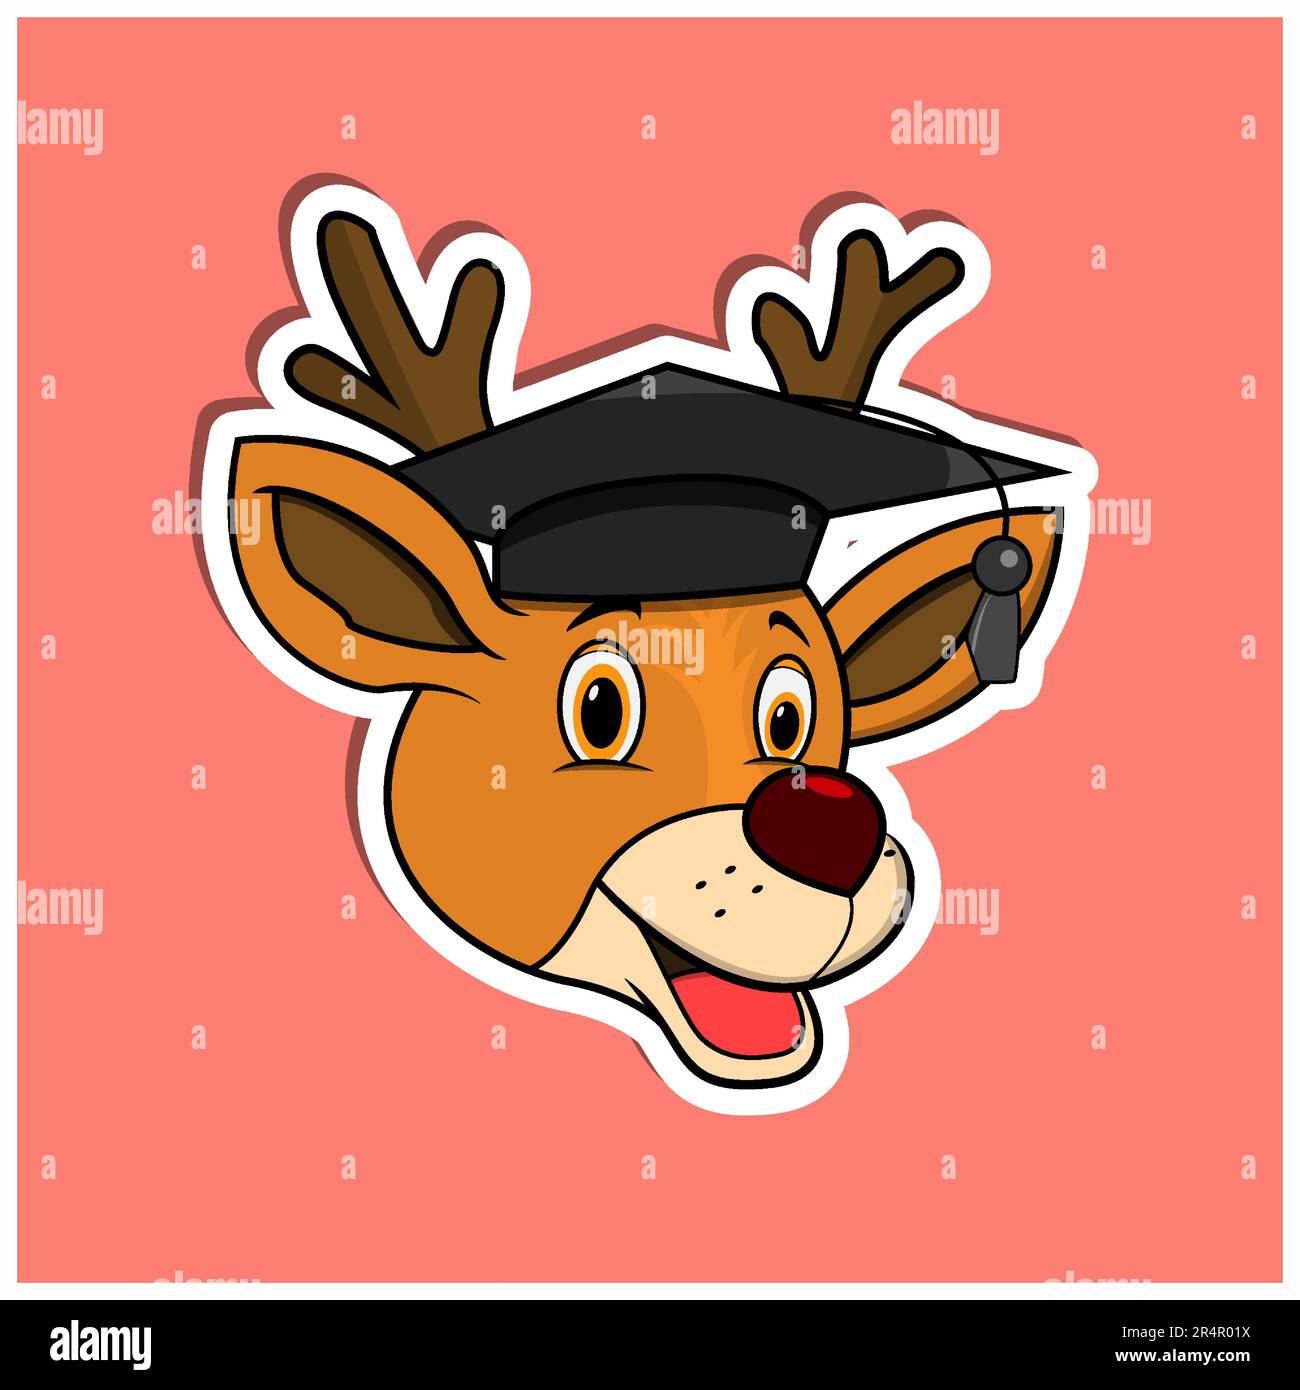 Adesivo per il viso animale con cervi che indossano un cappello graduato. Design dei personaggi. Vettore e illustrazione Illustrazione Vettoriale